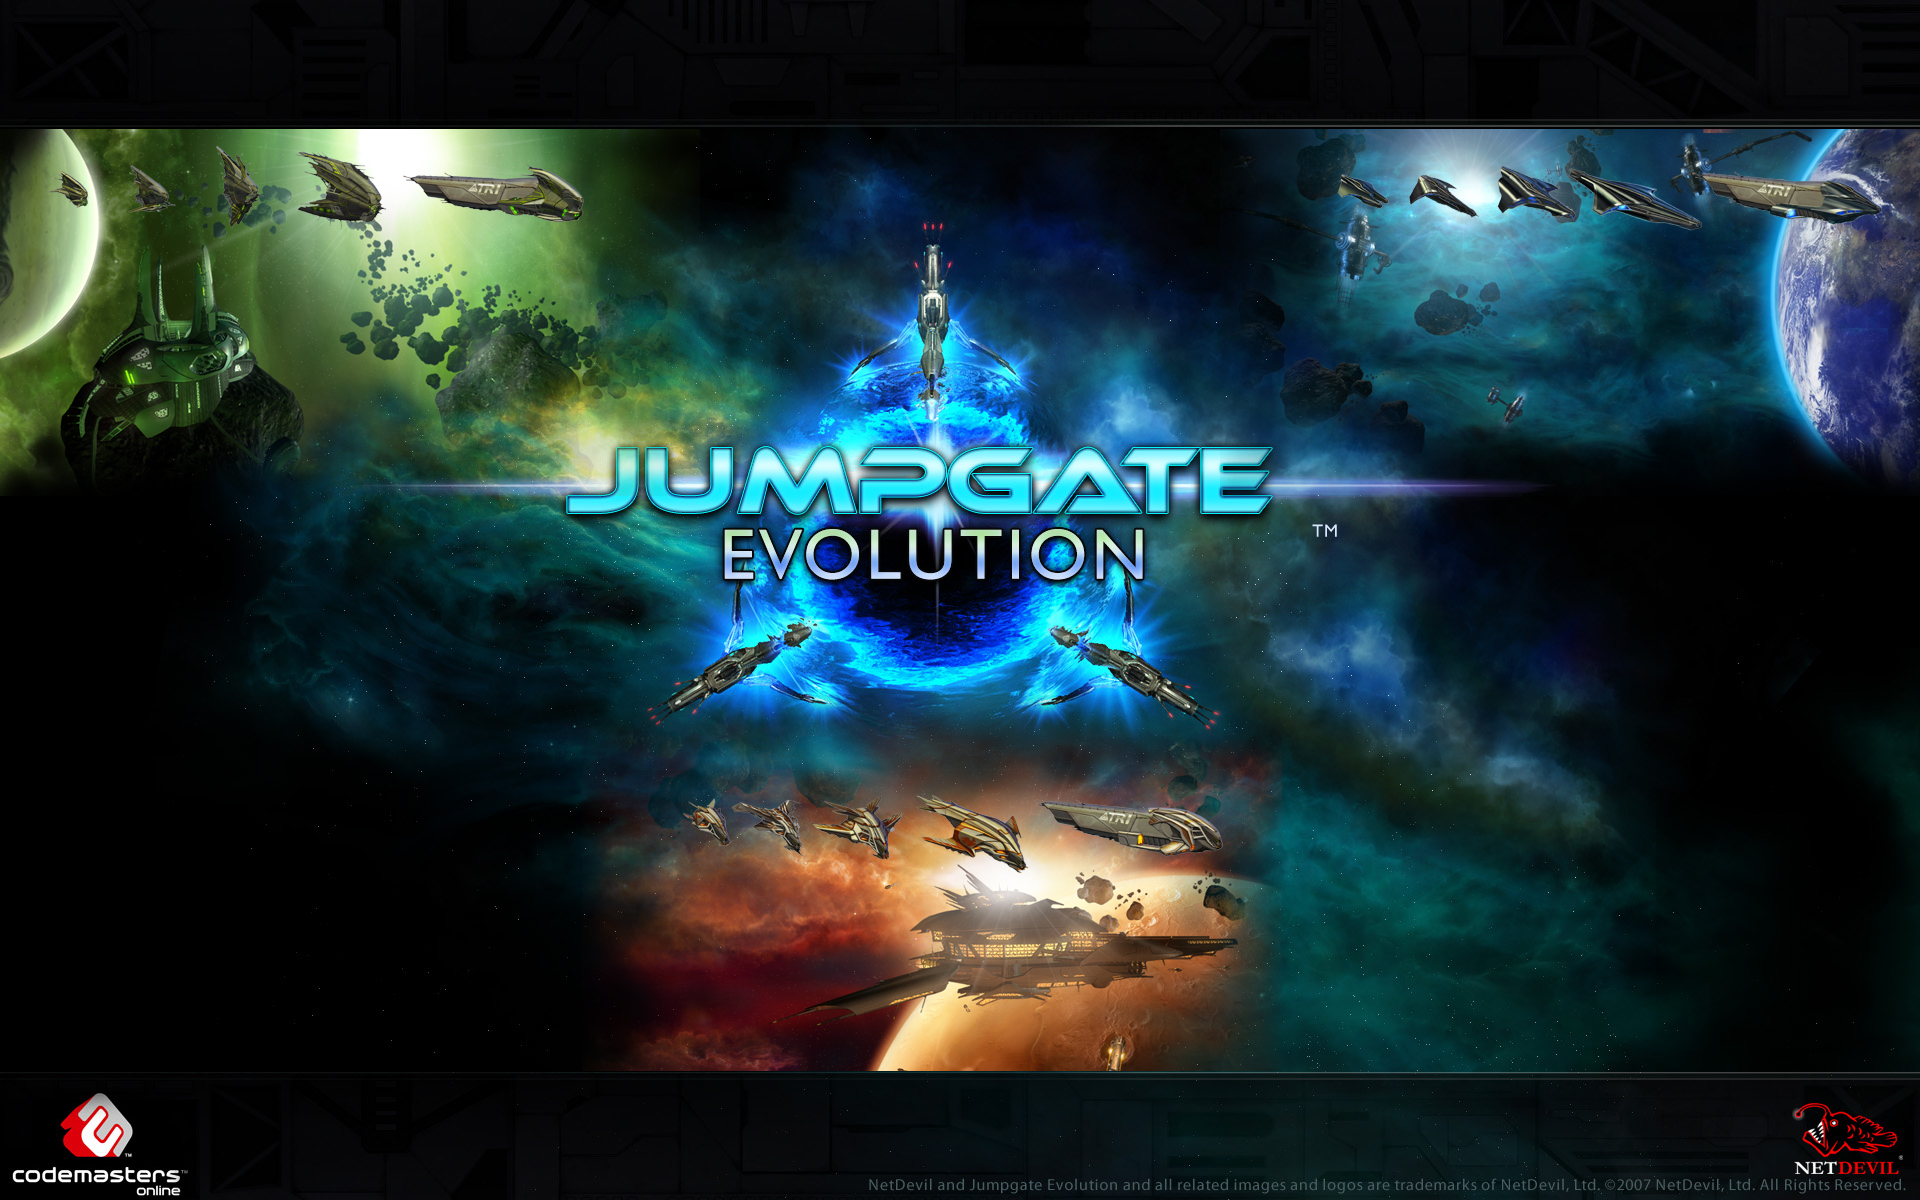 Jumpgate Evolution HD wallpapers, Desktop wallpaper - most viewed